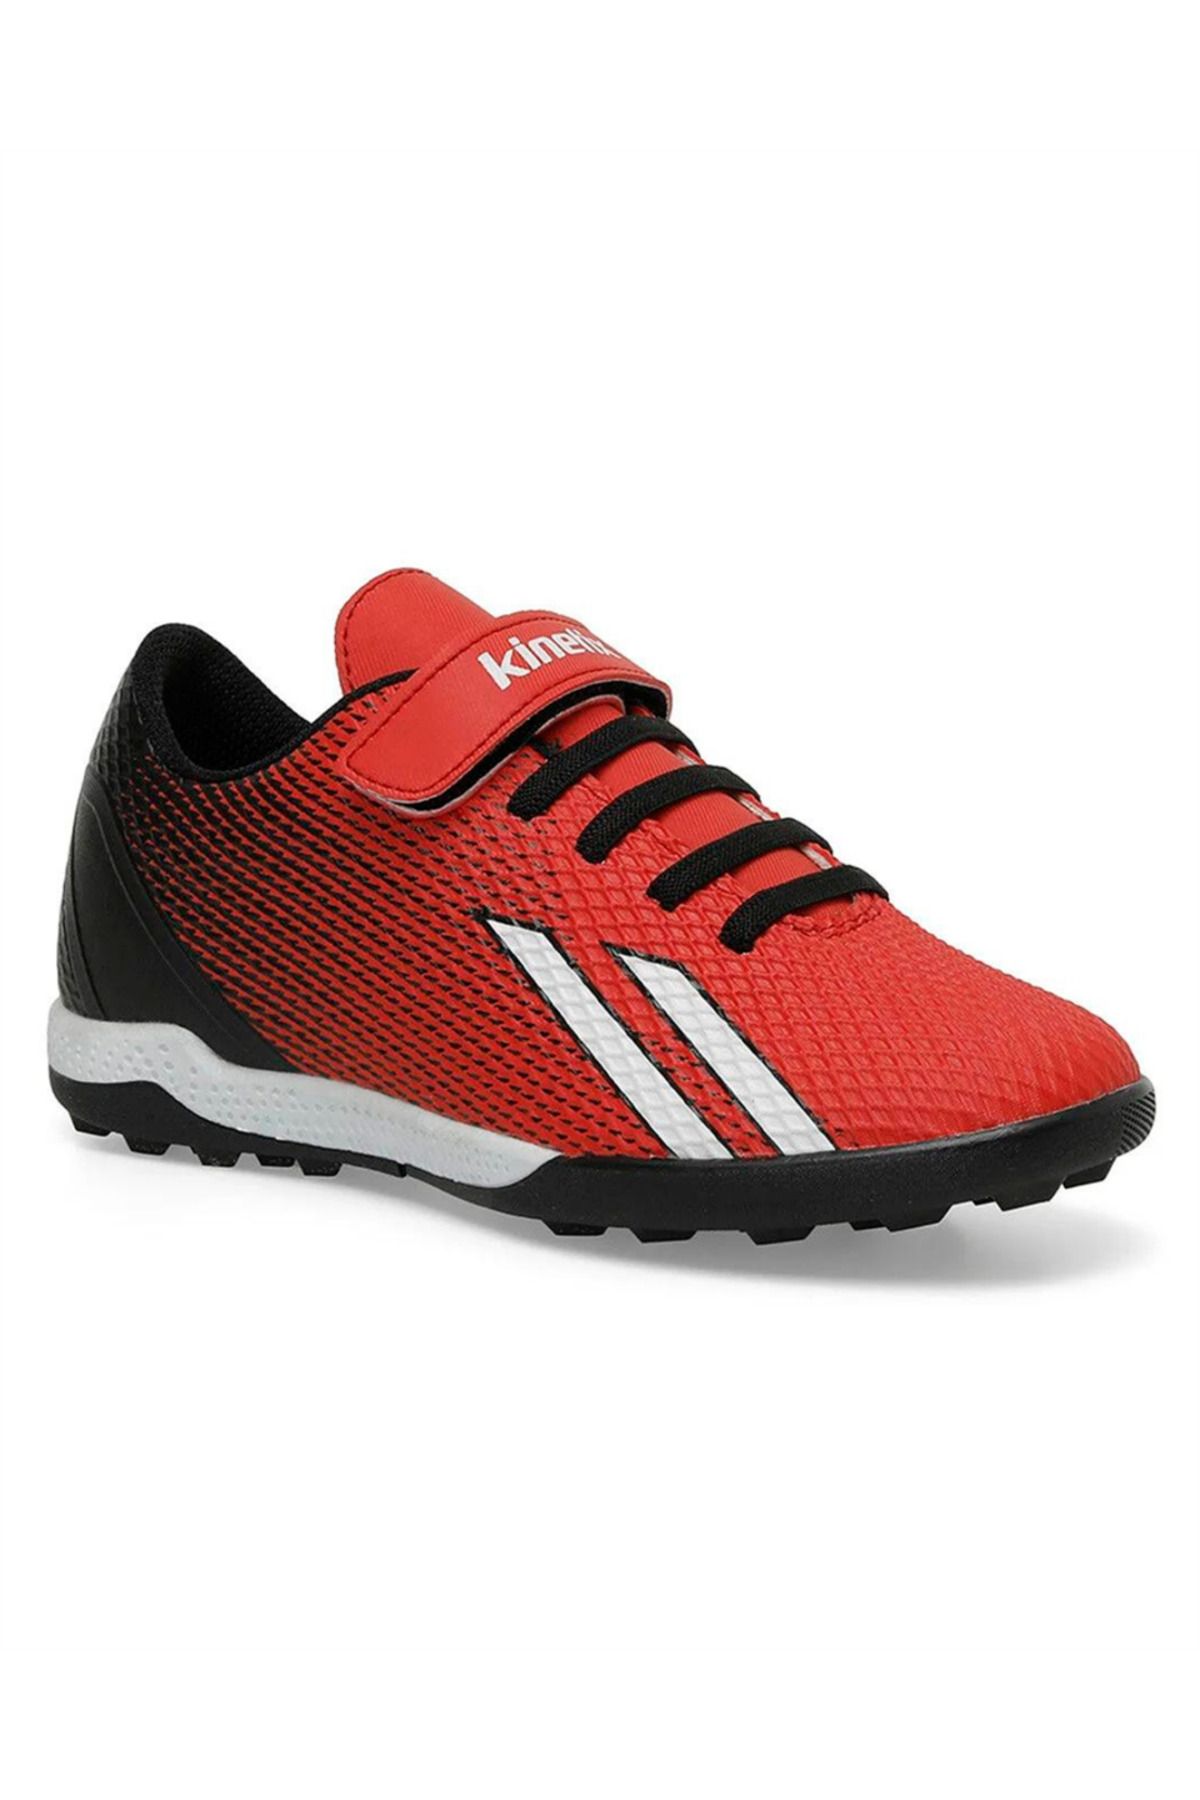 Kinetix Enta Tf 4fx Çocuk (31-35) Kırmızı-siyah-beyaz Halı Saha Futbol Ayakkabı